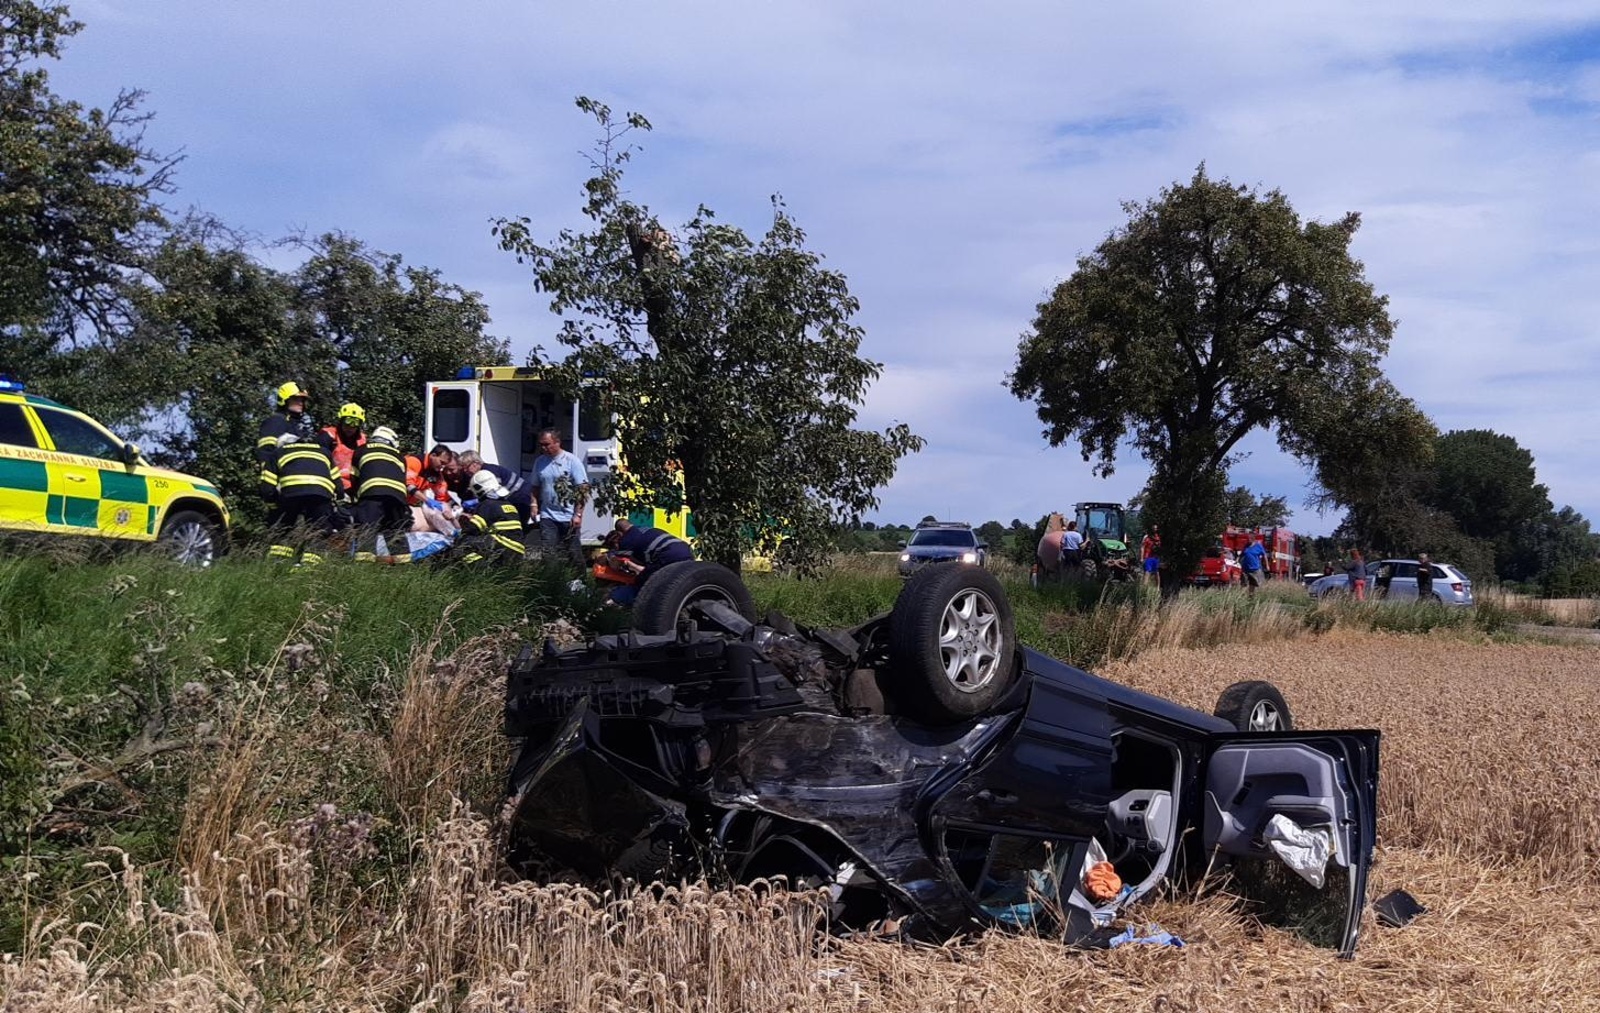 069-Osobní vozidlo převrácené do pole po střetu s traktorem u Kněžmostu na Mladoboleslavsku.jpg